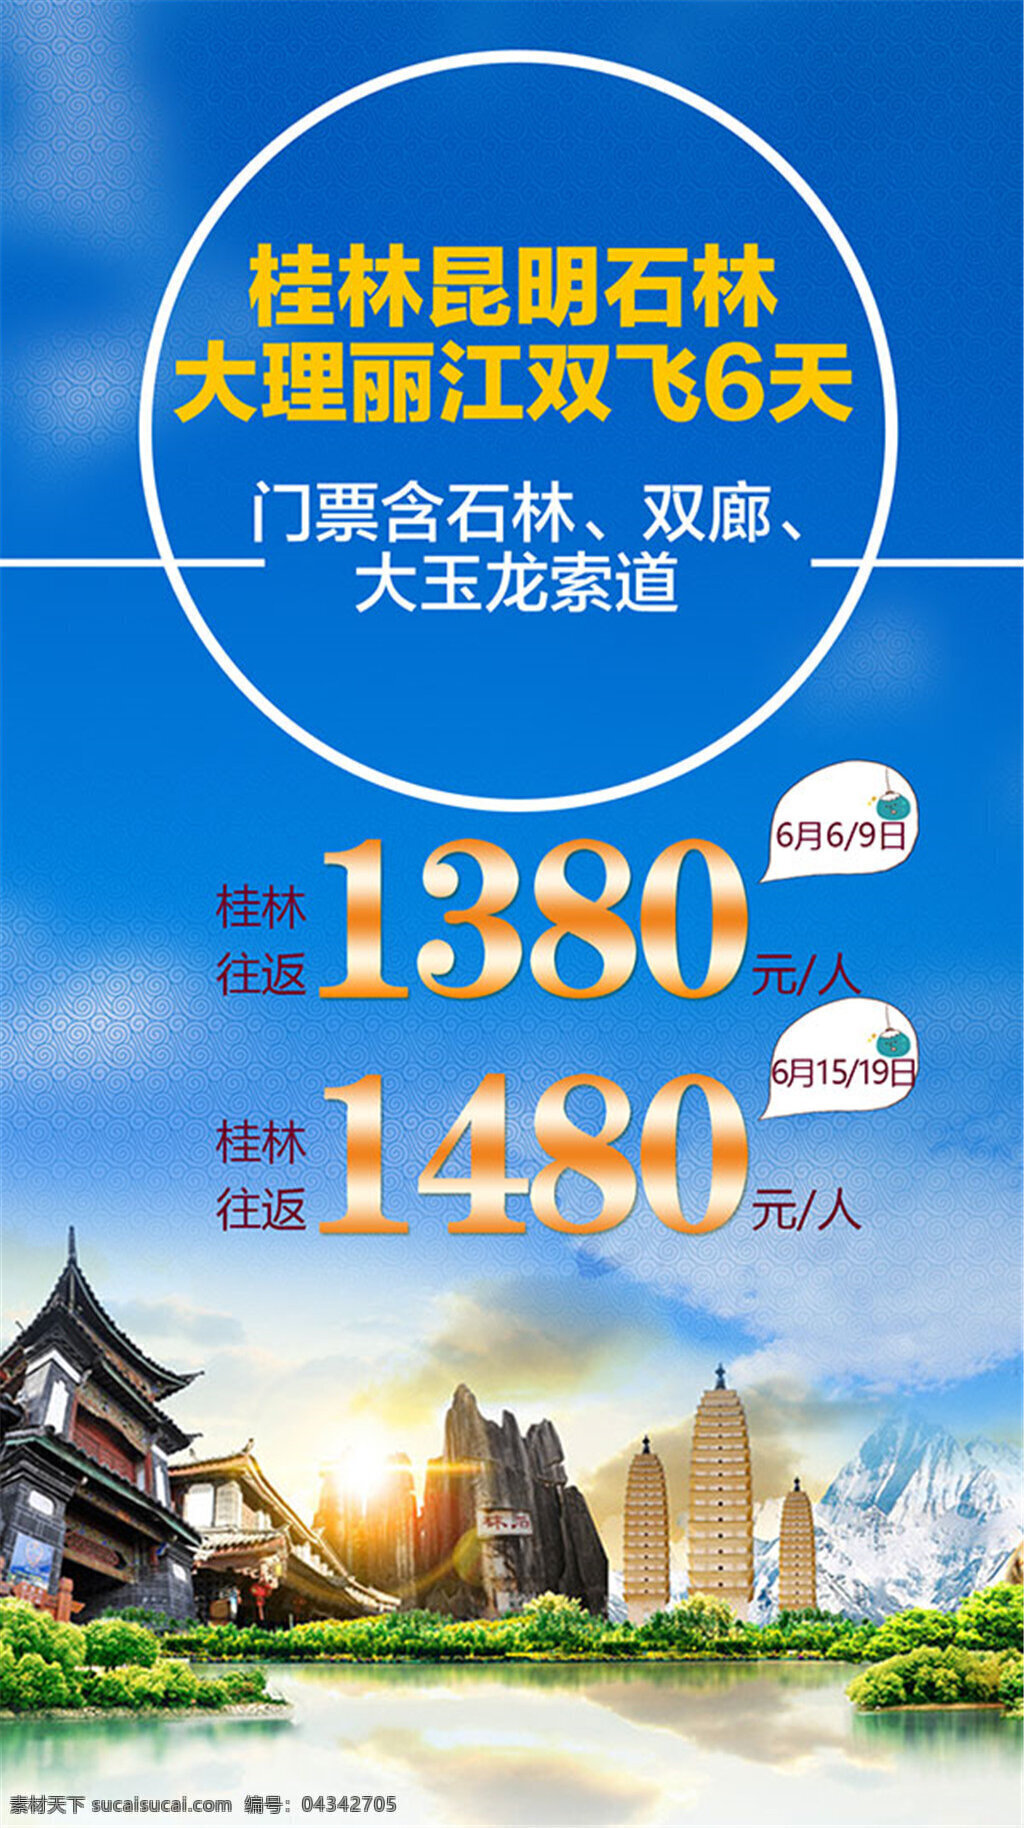 双飞 天 旅游 广告 宣传海报 桂林 往返 度假 桂林山水 蓝色